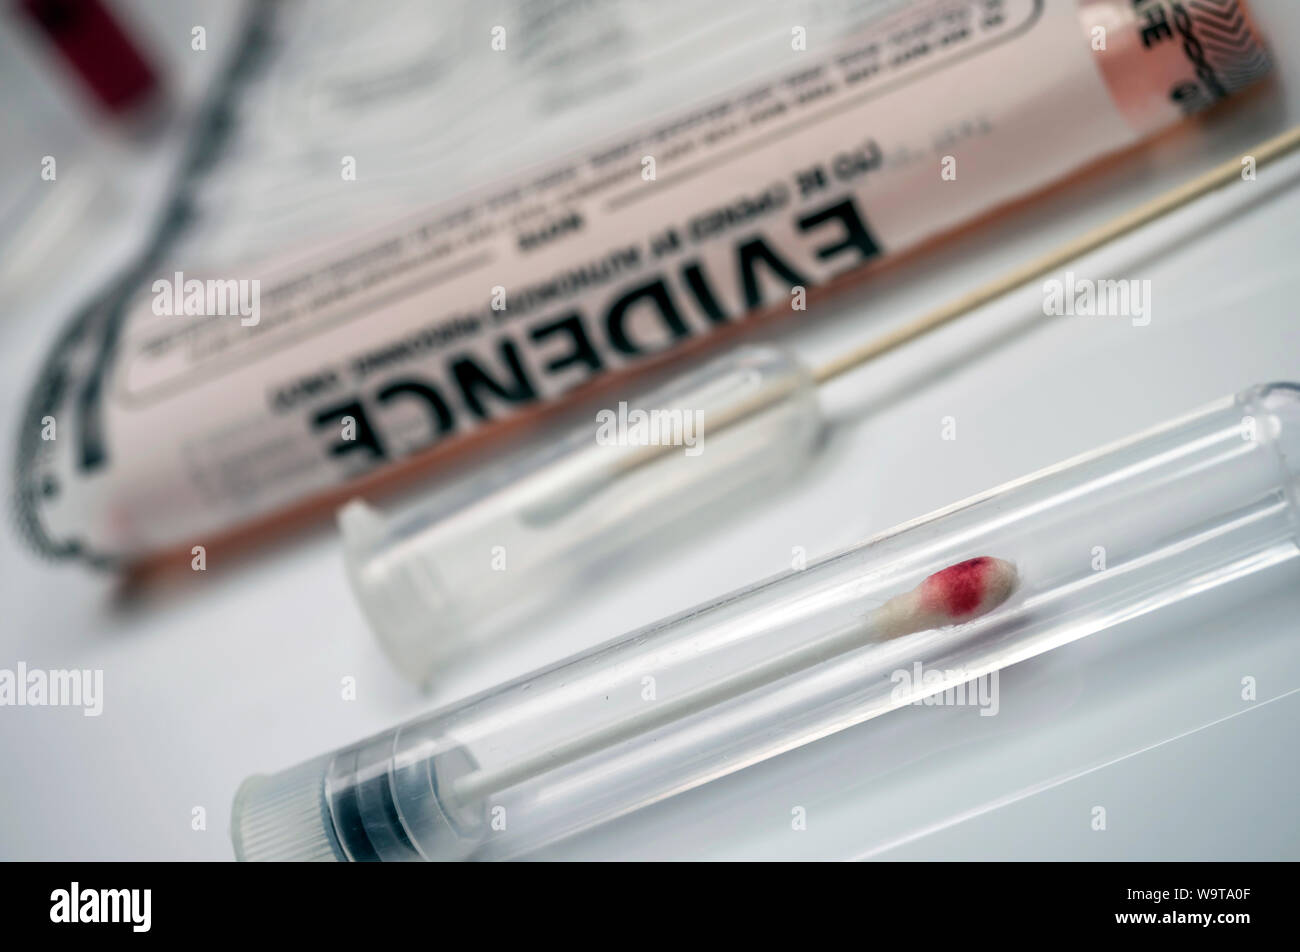 Dettaglio delle provette di campionamento del DNA nelle apparecchiature di laboratorio per analisi forense, immagine concettuale Foto Stock